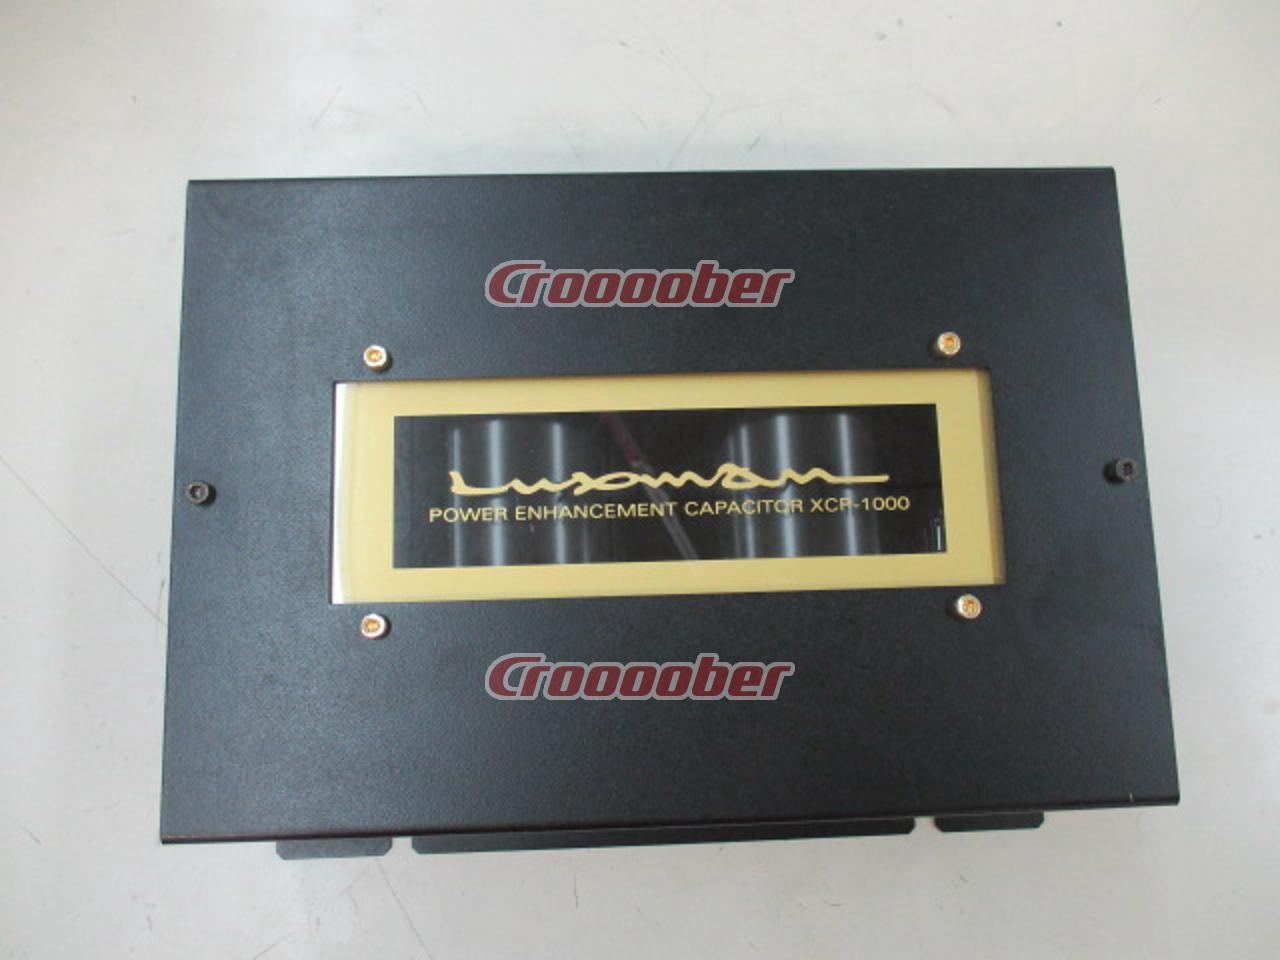 【値引き】LUXMAN XCP-1000 カーオーディオ用電源強化キャパシター